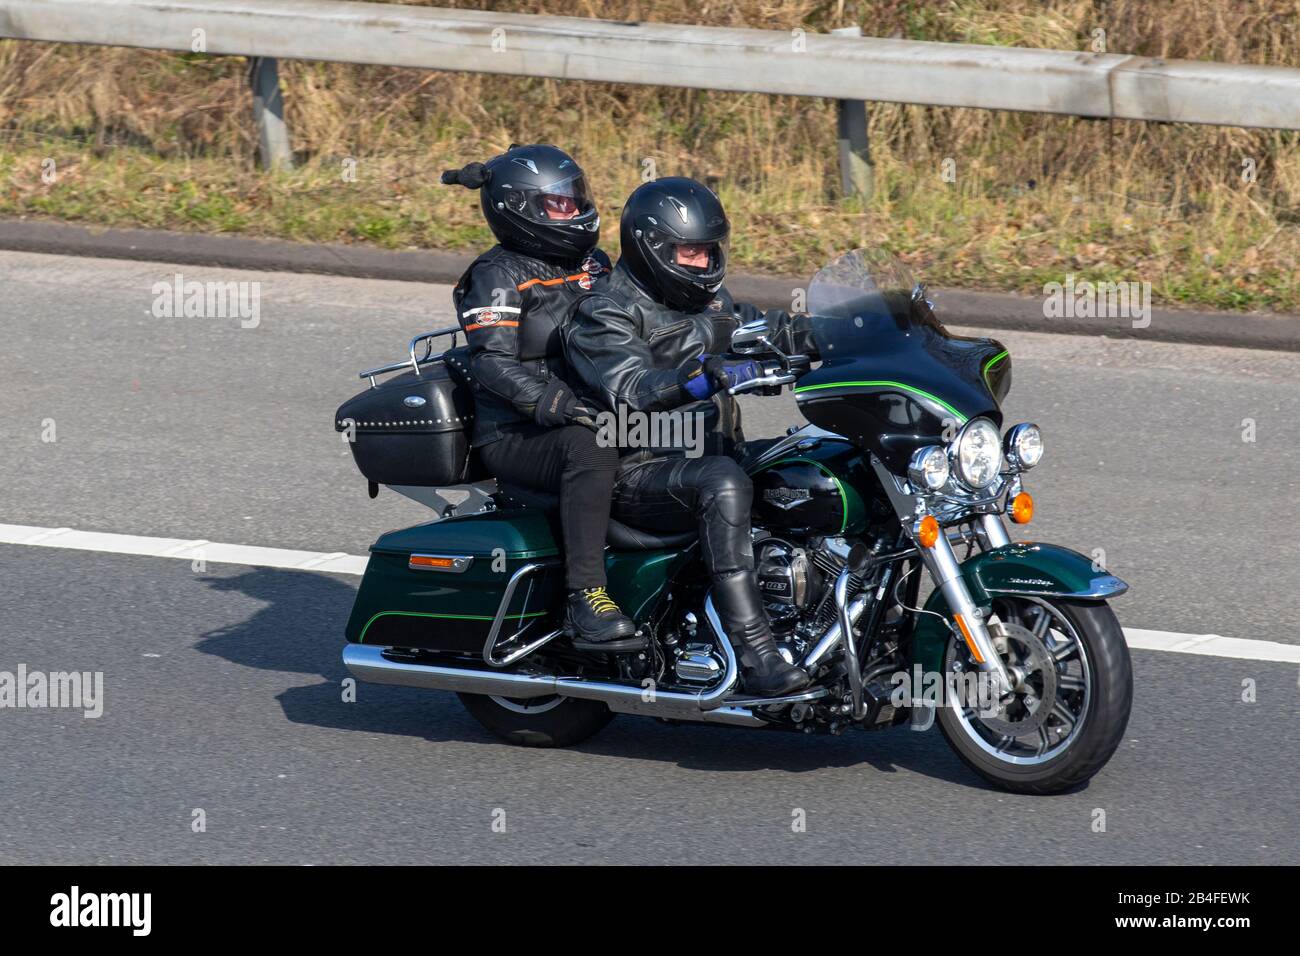 Green Harley Davidson 103 traffico veicolare, trasporto a due ruote, veicoli moderni, motociclette, veicolo, strade, motociclisti motociclisti che viaggiano sull'autostrada M6 Chorley, Regno Unito Foto Stock